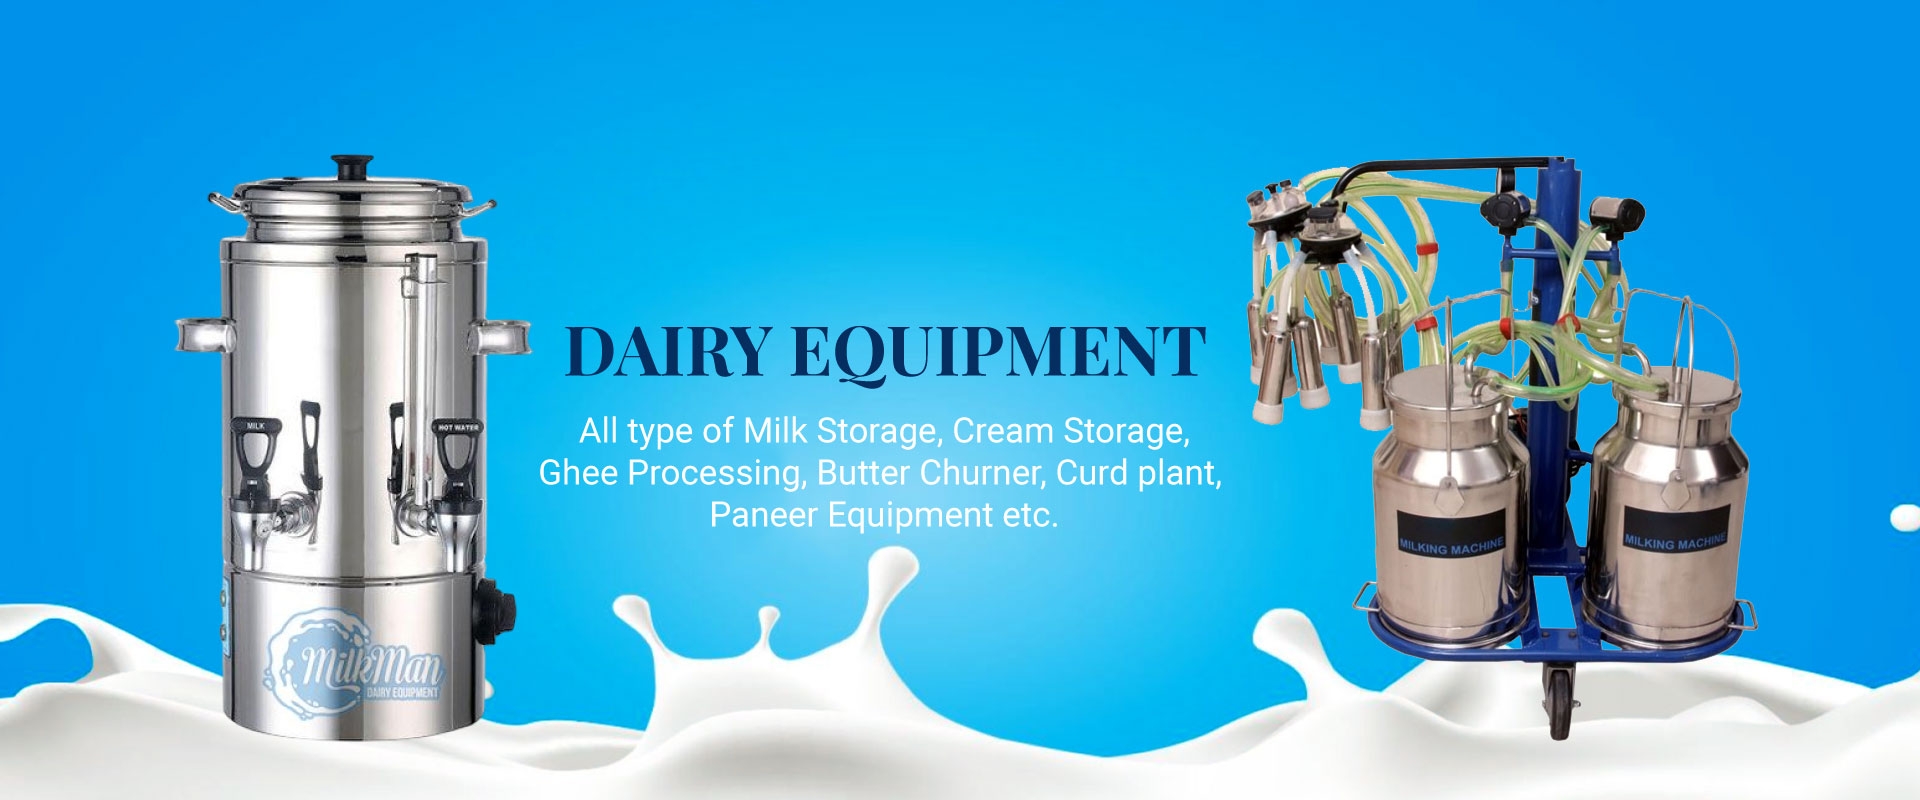 Dairy Equipment in Turkey